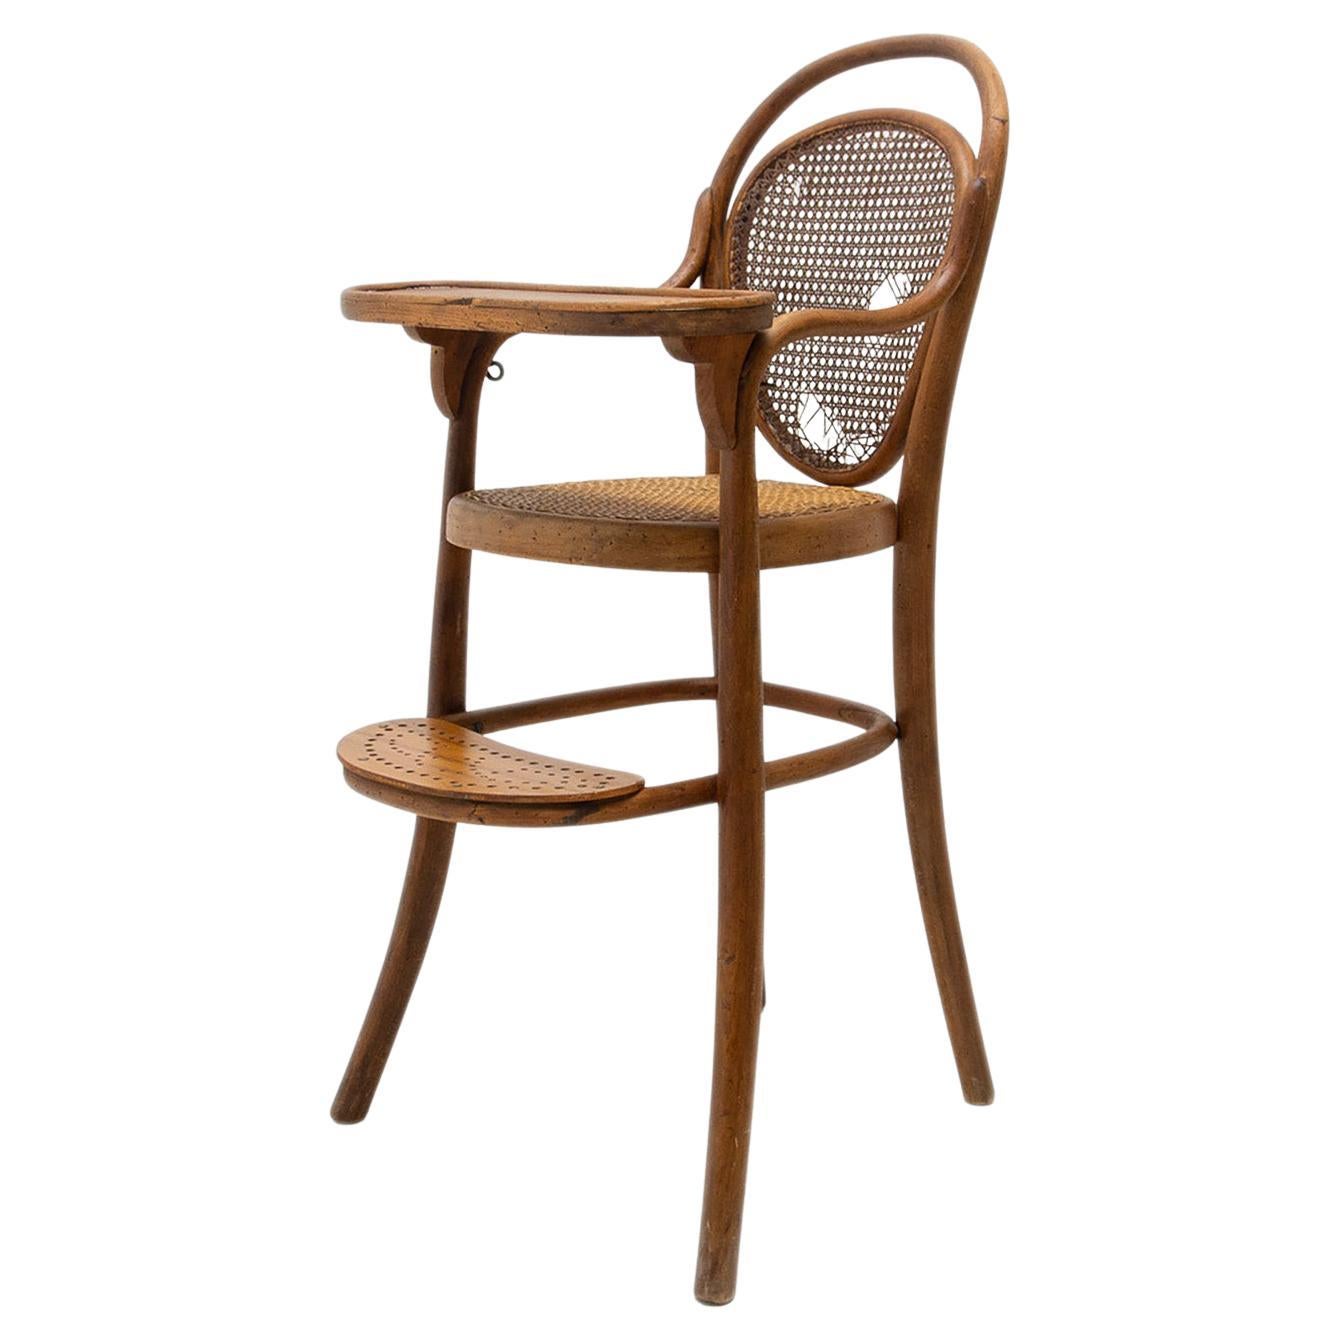 Antique Thonet Children’s Chair